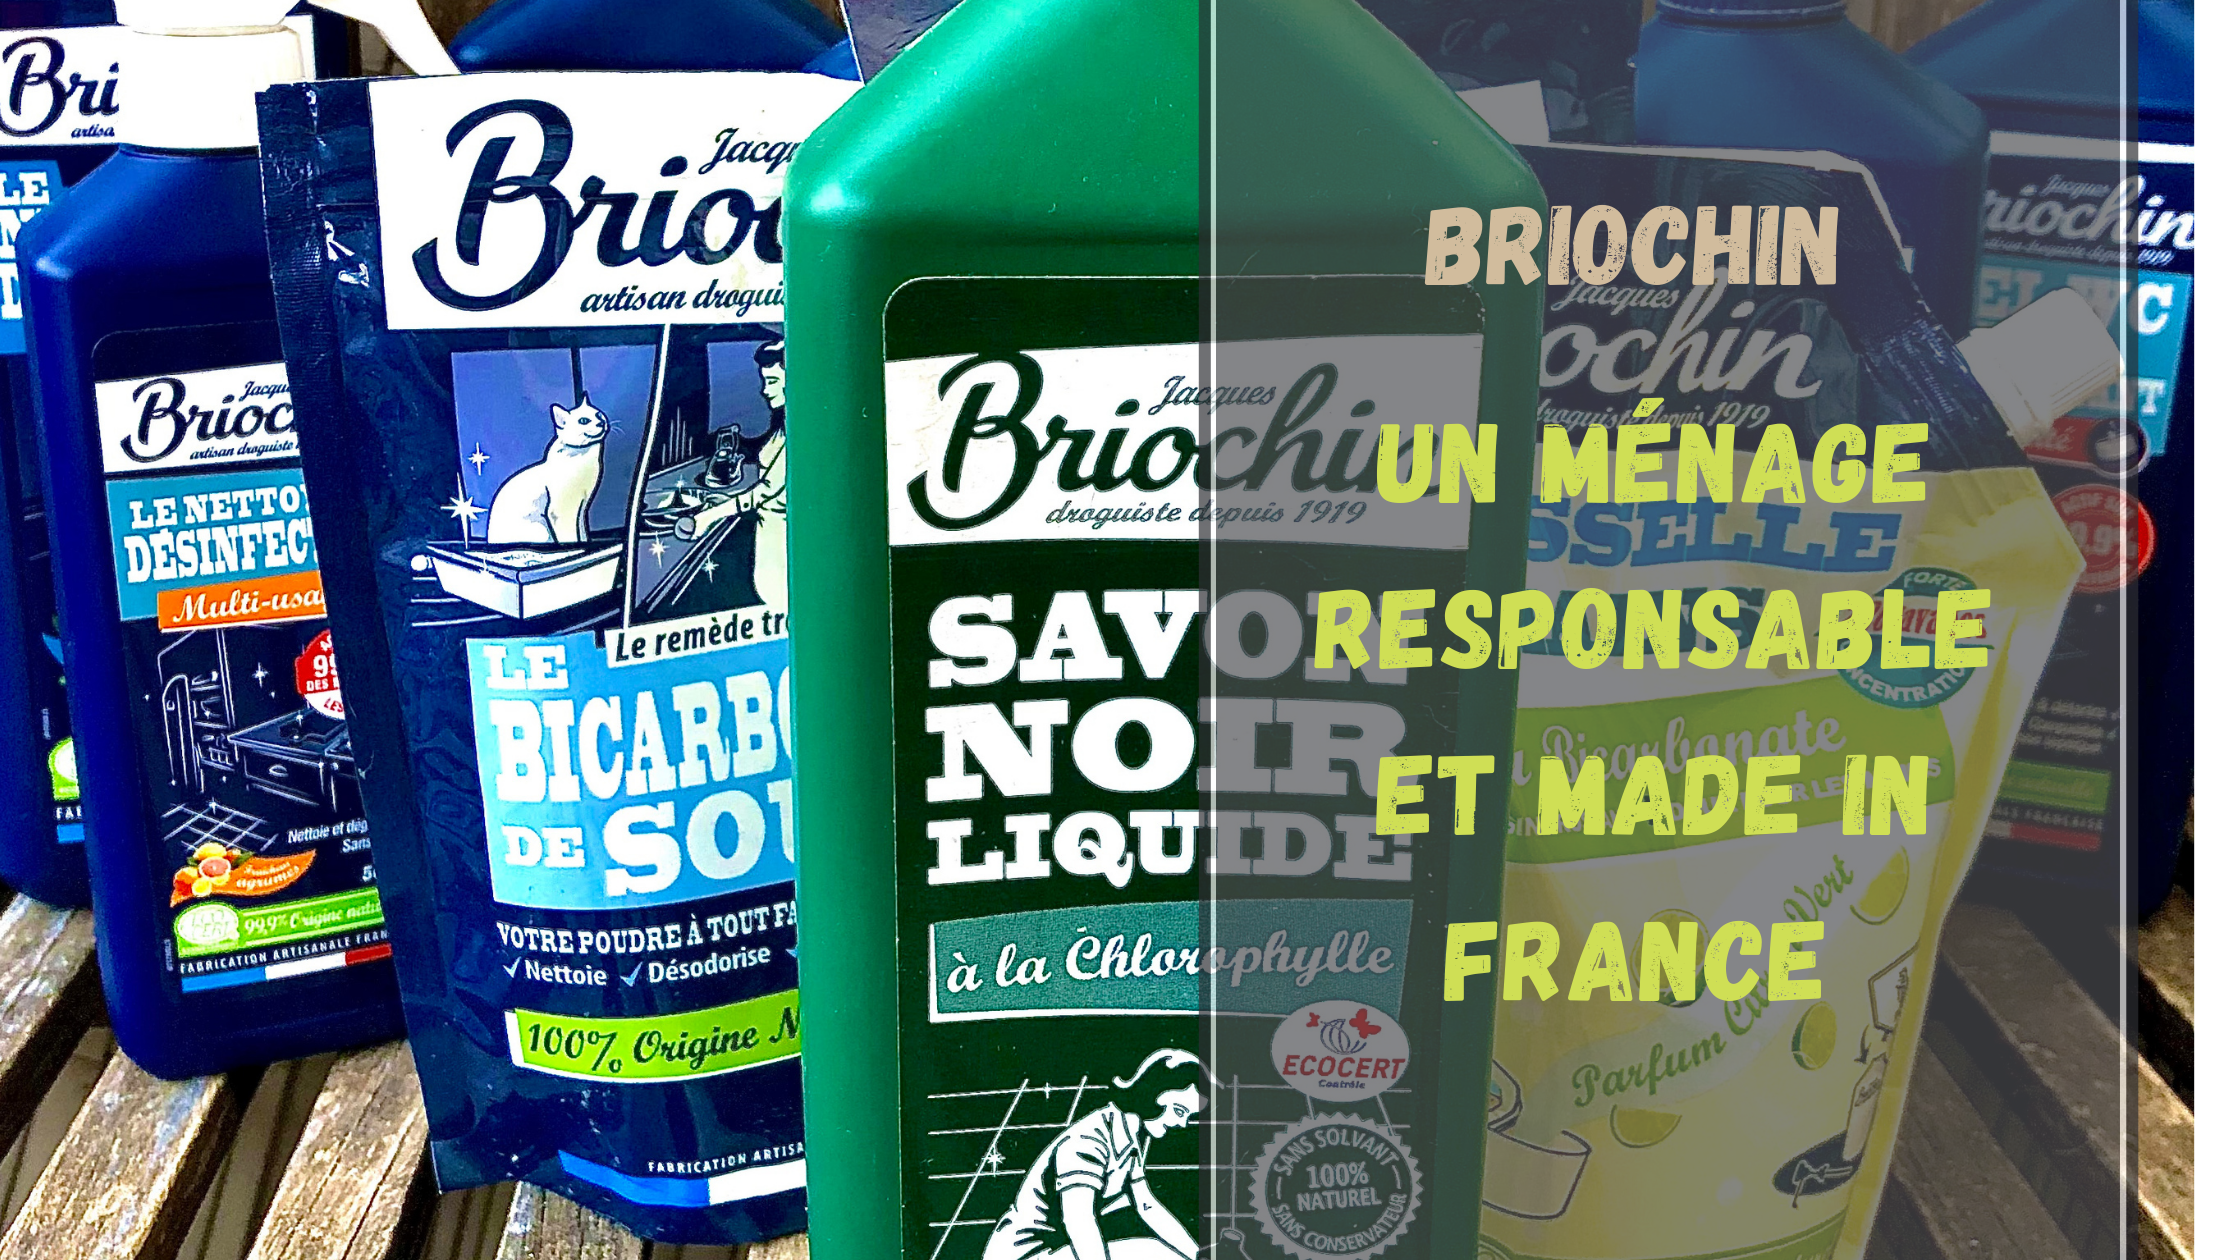 Liquide Vaisselle et Main sans parfum - 500ml, JACQUES BRIOCHIN